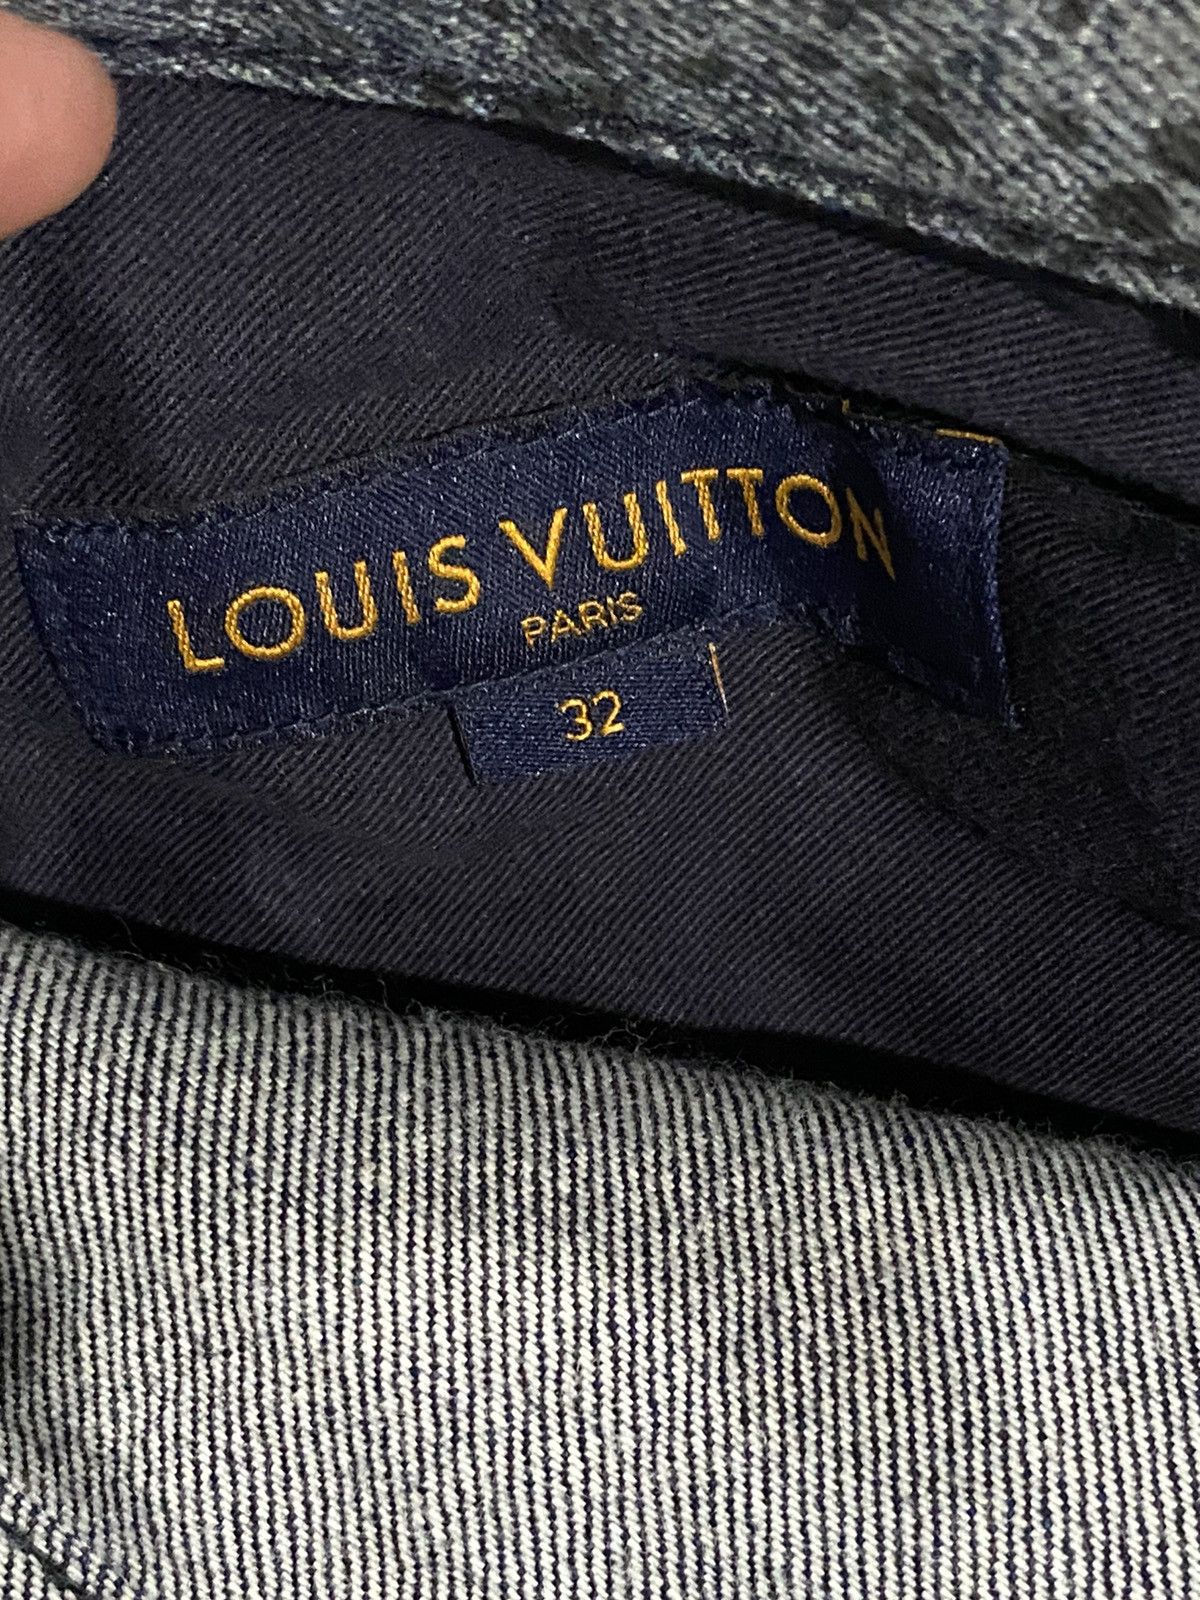 Louis Vuitton Galaxy jeans Size US 32 / EU 48 - 7 Thumbnail